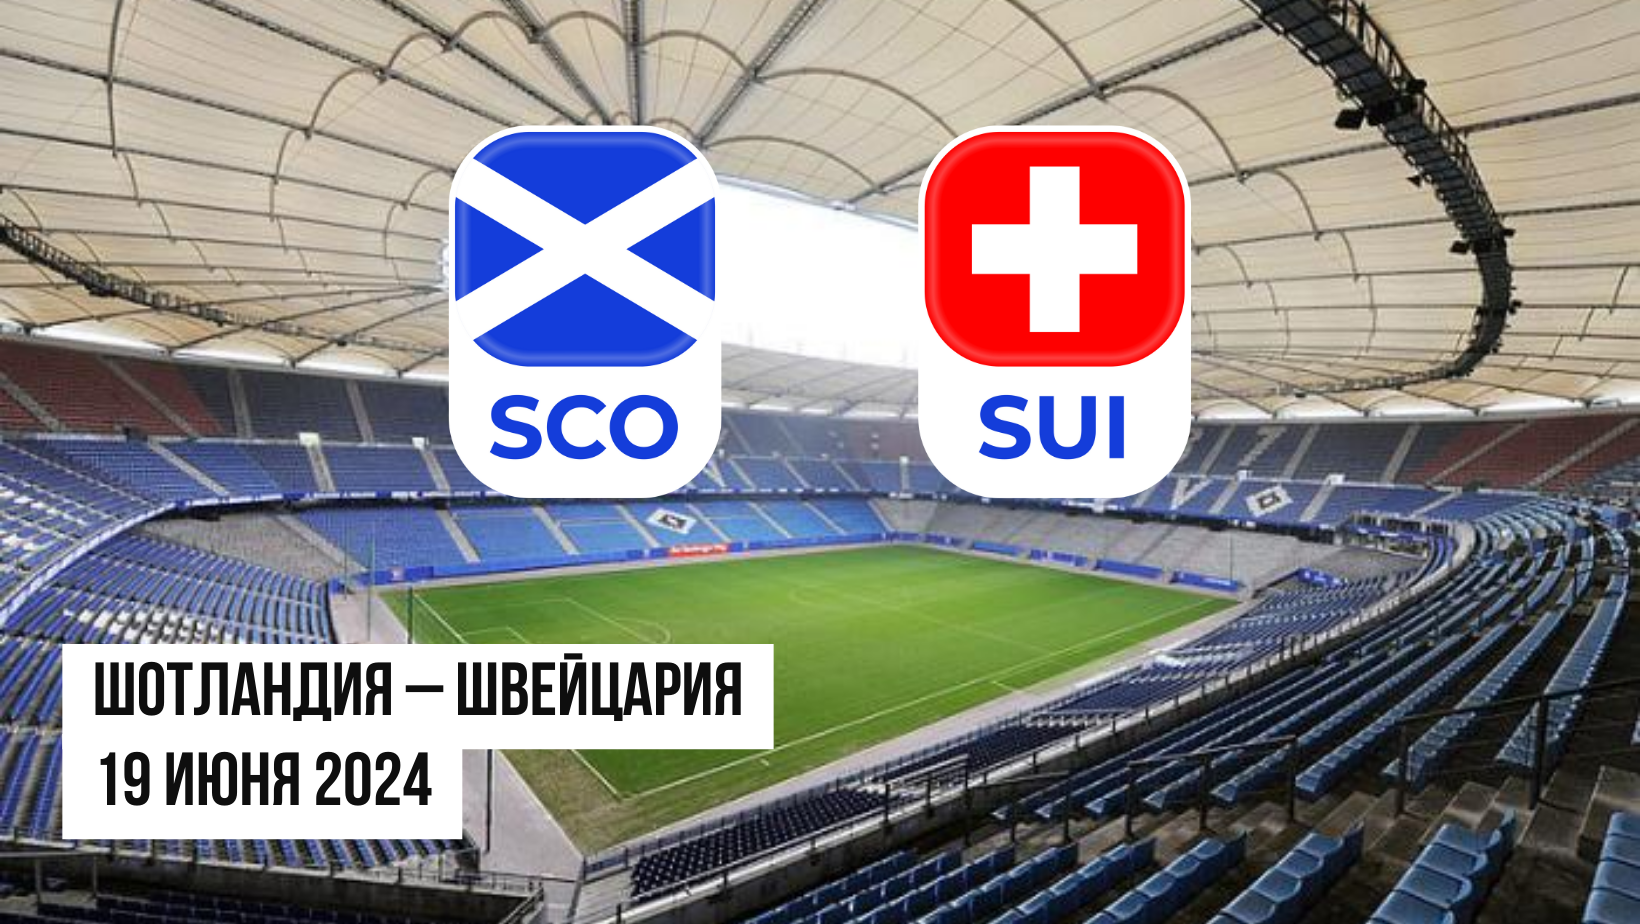 Шотландия - Швейцария: ставки и коэффициенты на матч Евро-2024 — 19 июня